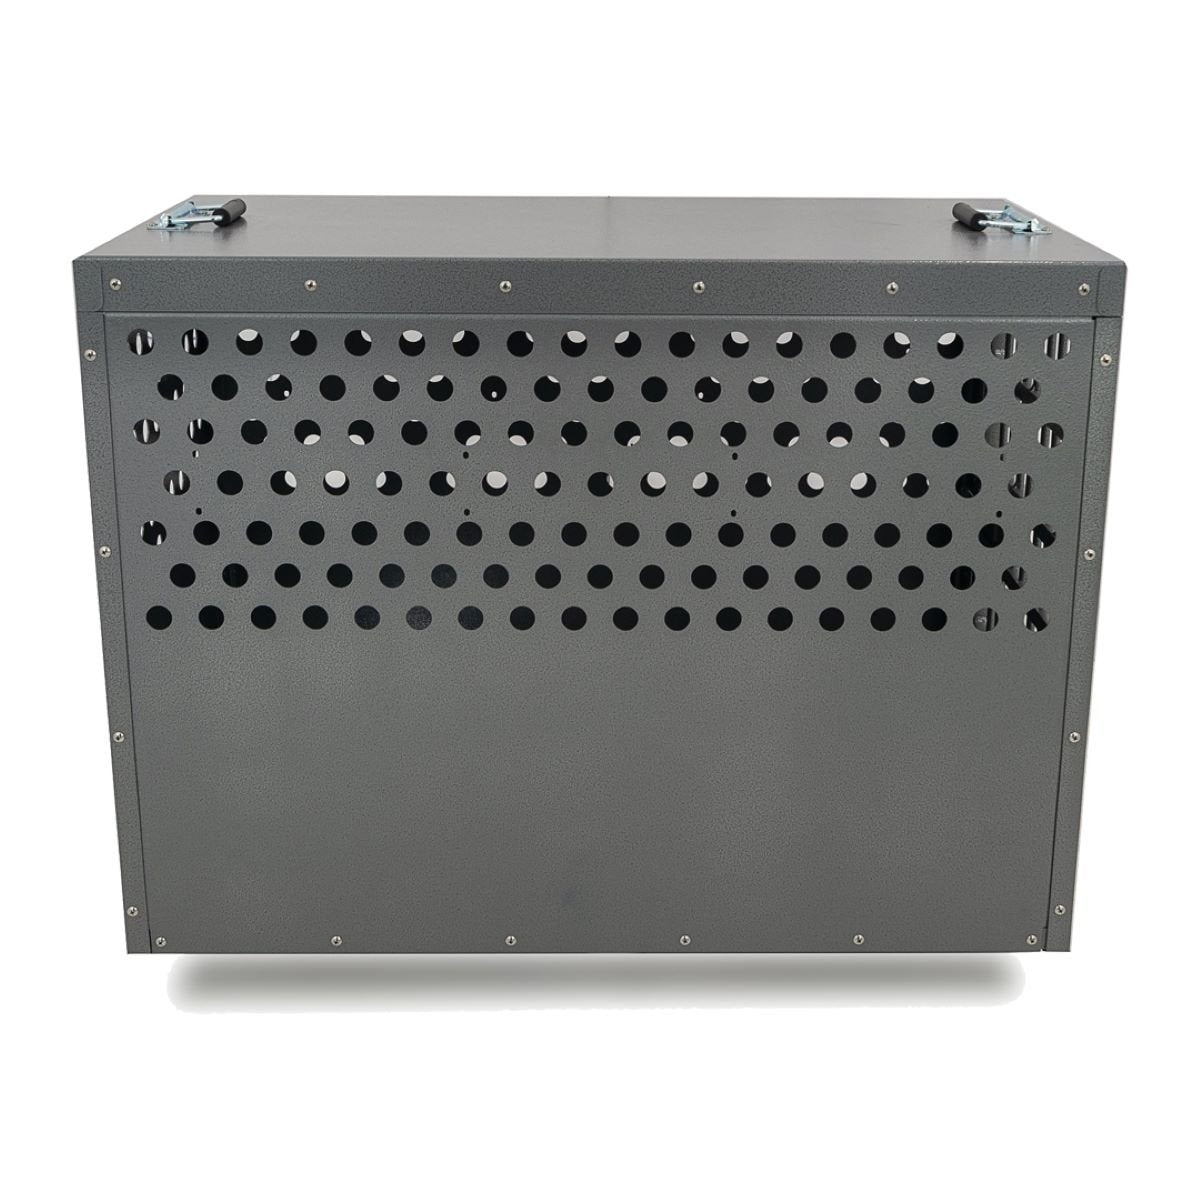 Zinger Winger Professional 3000 Front/Back Entry Dog Crate, PR3000-2-FB